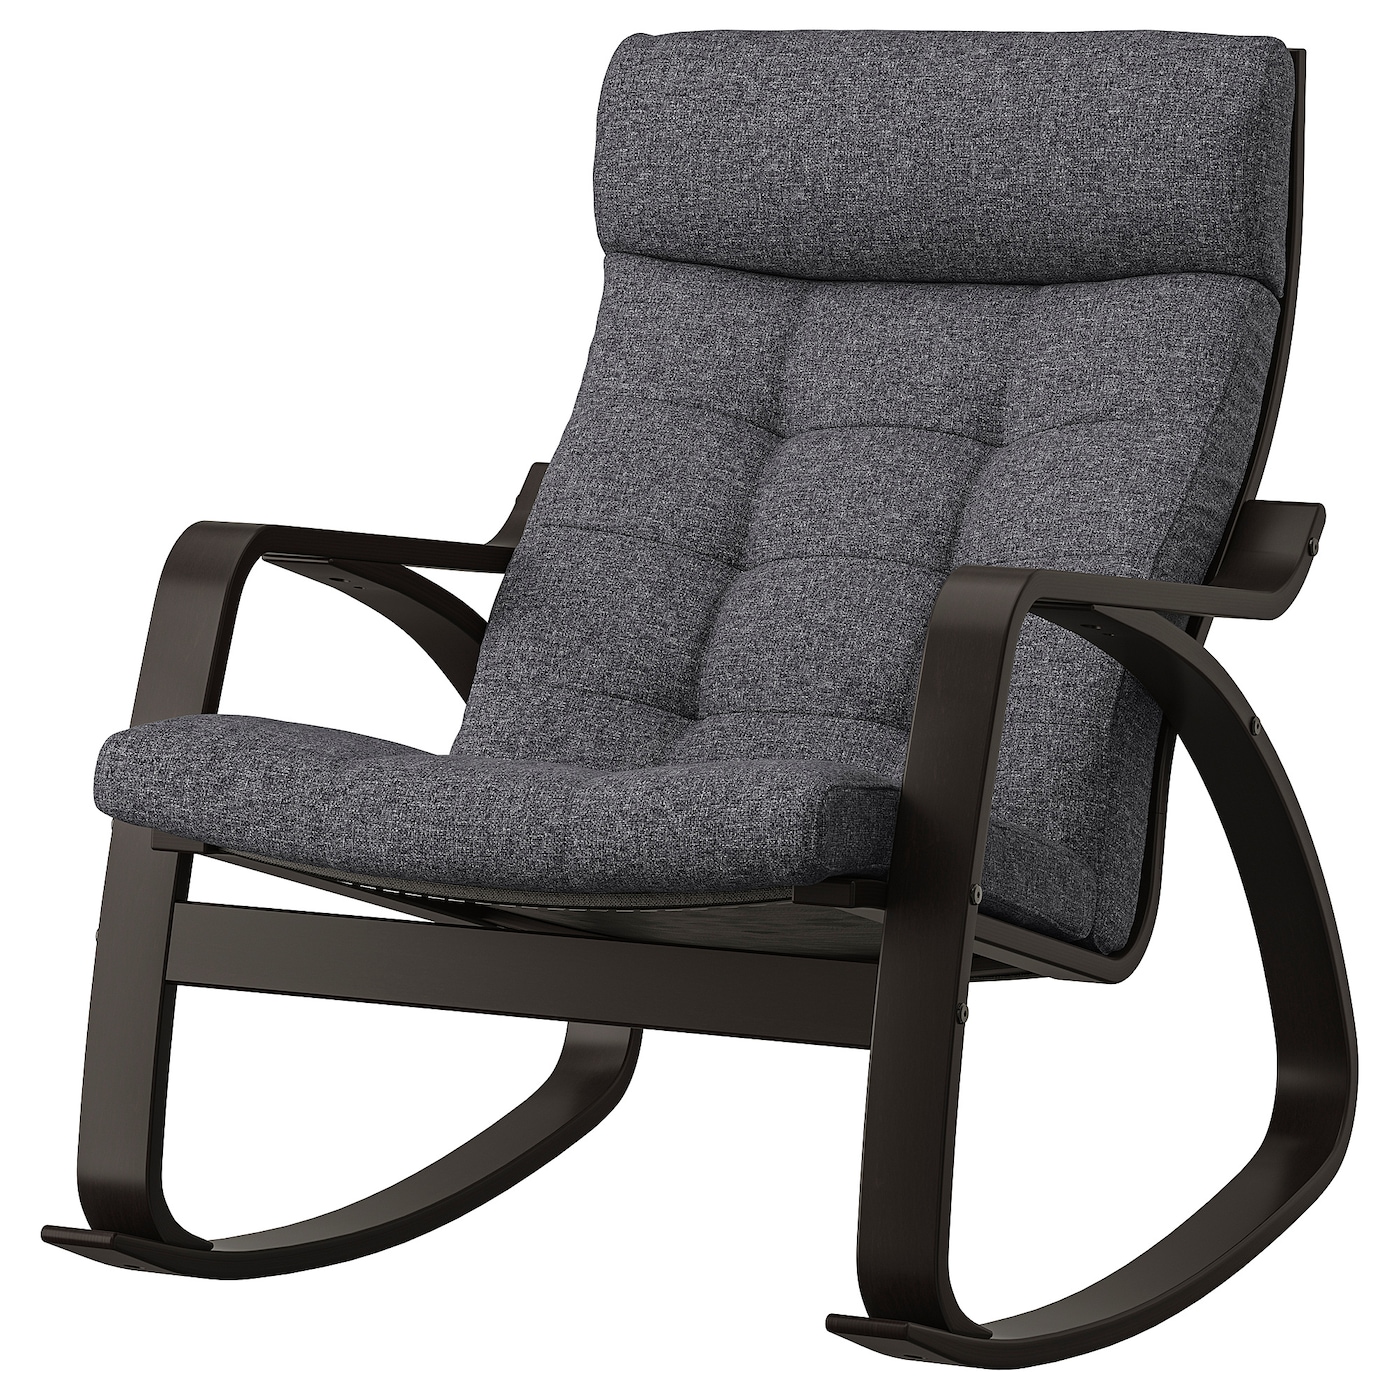 ПОЭНГ Кресло-качалка, черно-коричневый/Гуннаред темно-серый POÄNG IKEA кресло качалка remington rocking сhair relaxing rm2026